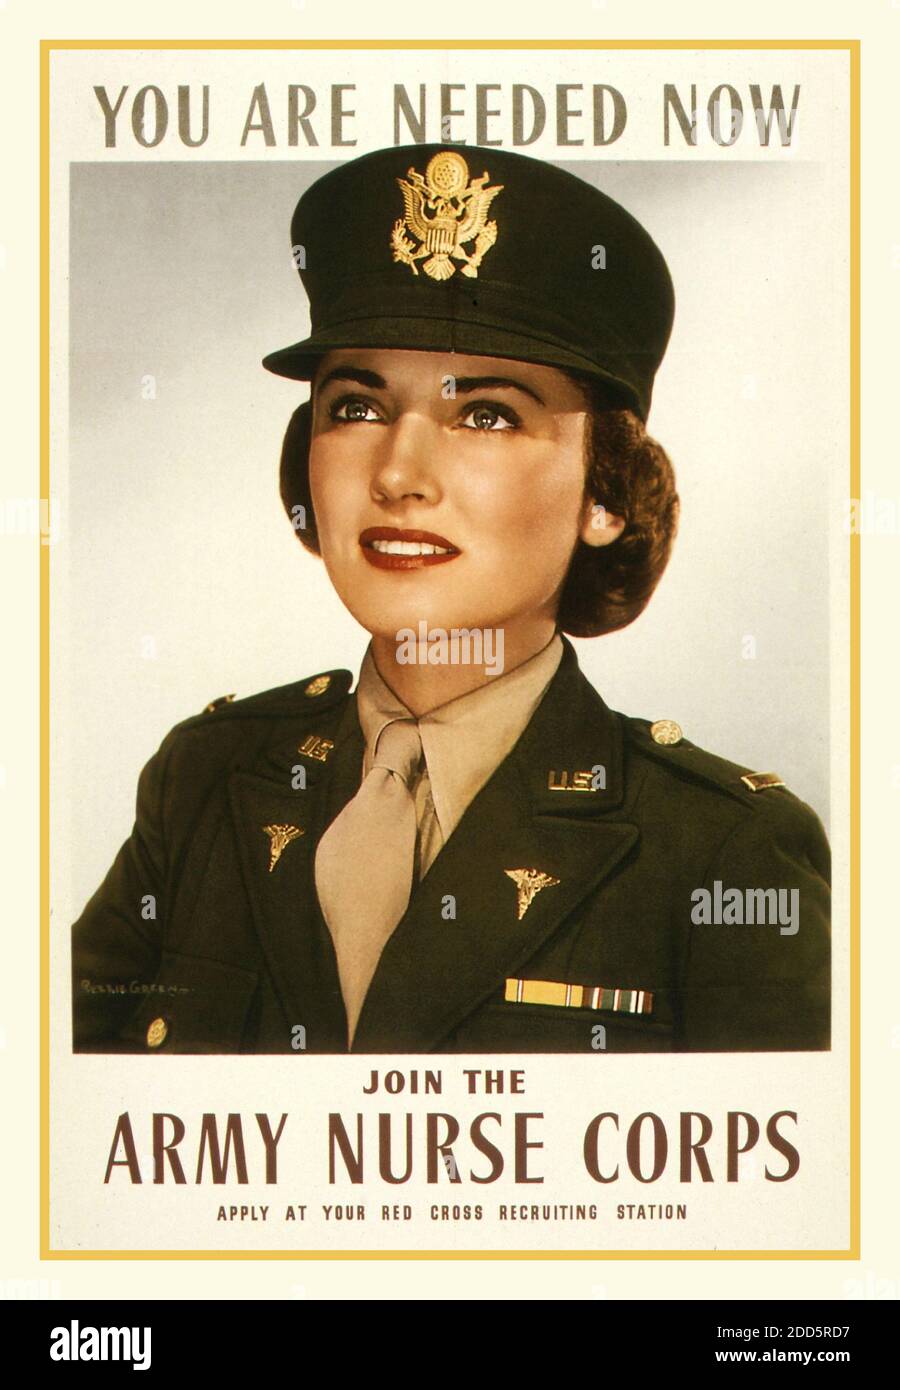 Vintage USA WW2 Nursing Recruitment Poster 'vous êtes nécessaire maintenant' 'Joignez-vous à l'armée Nurse corps'. 1943 affiche de recrutement pour les infirmières de l'armée américaine. Deuxième Guerre mondiale Etats-Unis d'Amérique Banque D'Images